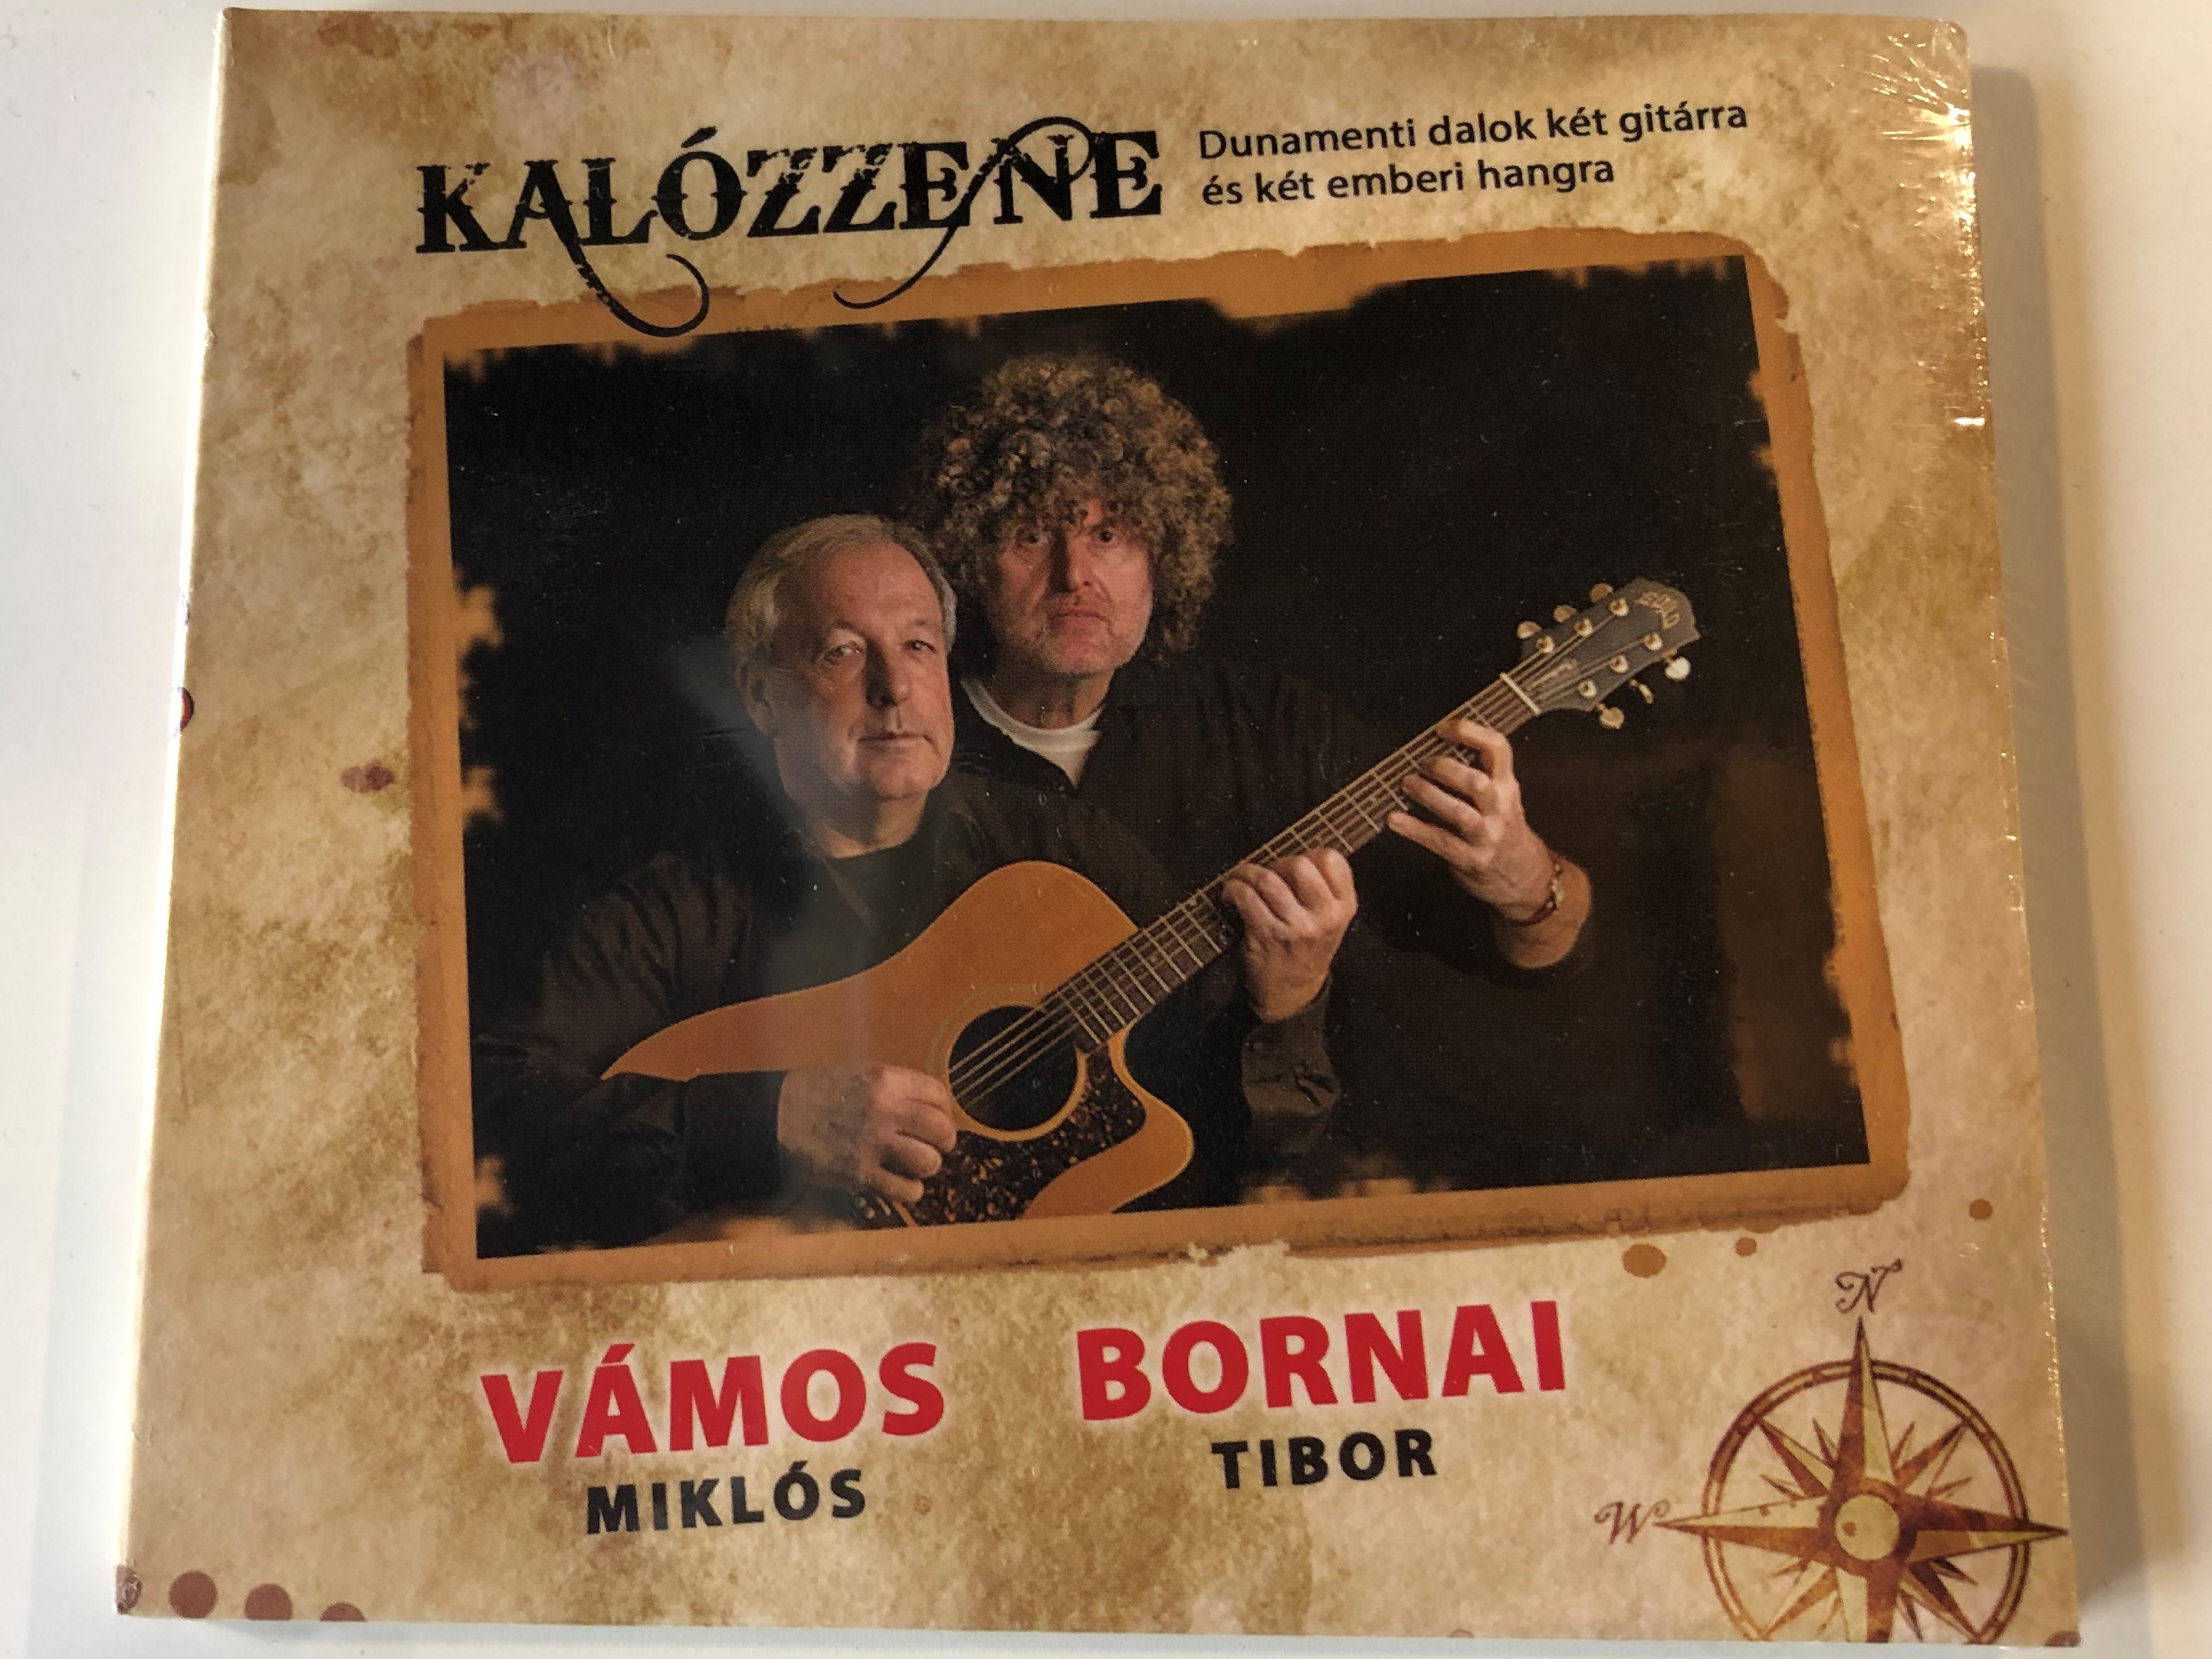 kal-zzene-v-mos-mikl-s-bornai-tibor-dunamenti-dalok-ket-gitarra-es-ket-emberi-hangra-alexandra-records-audio-cd-2013-pdkcd0108-1-.jpg